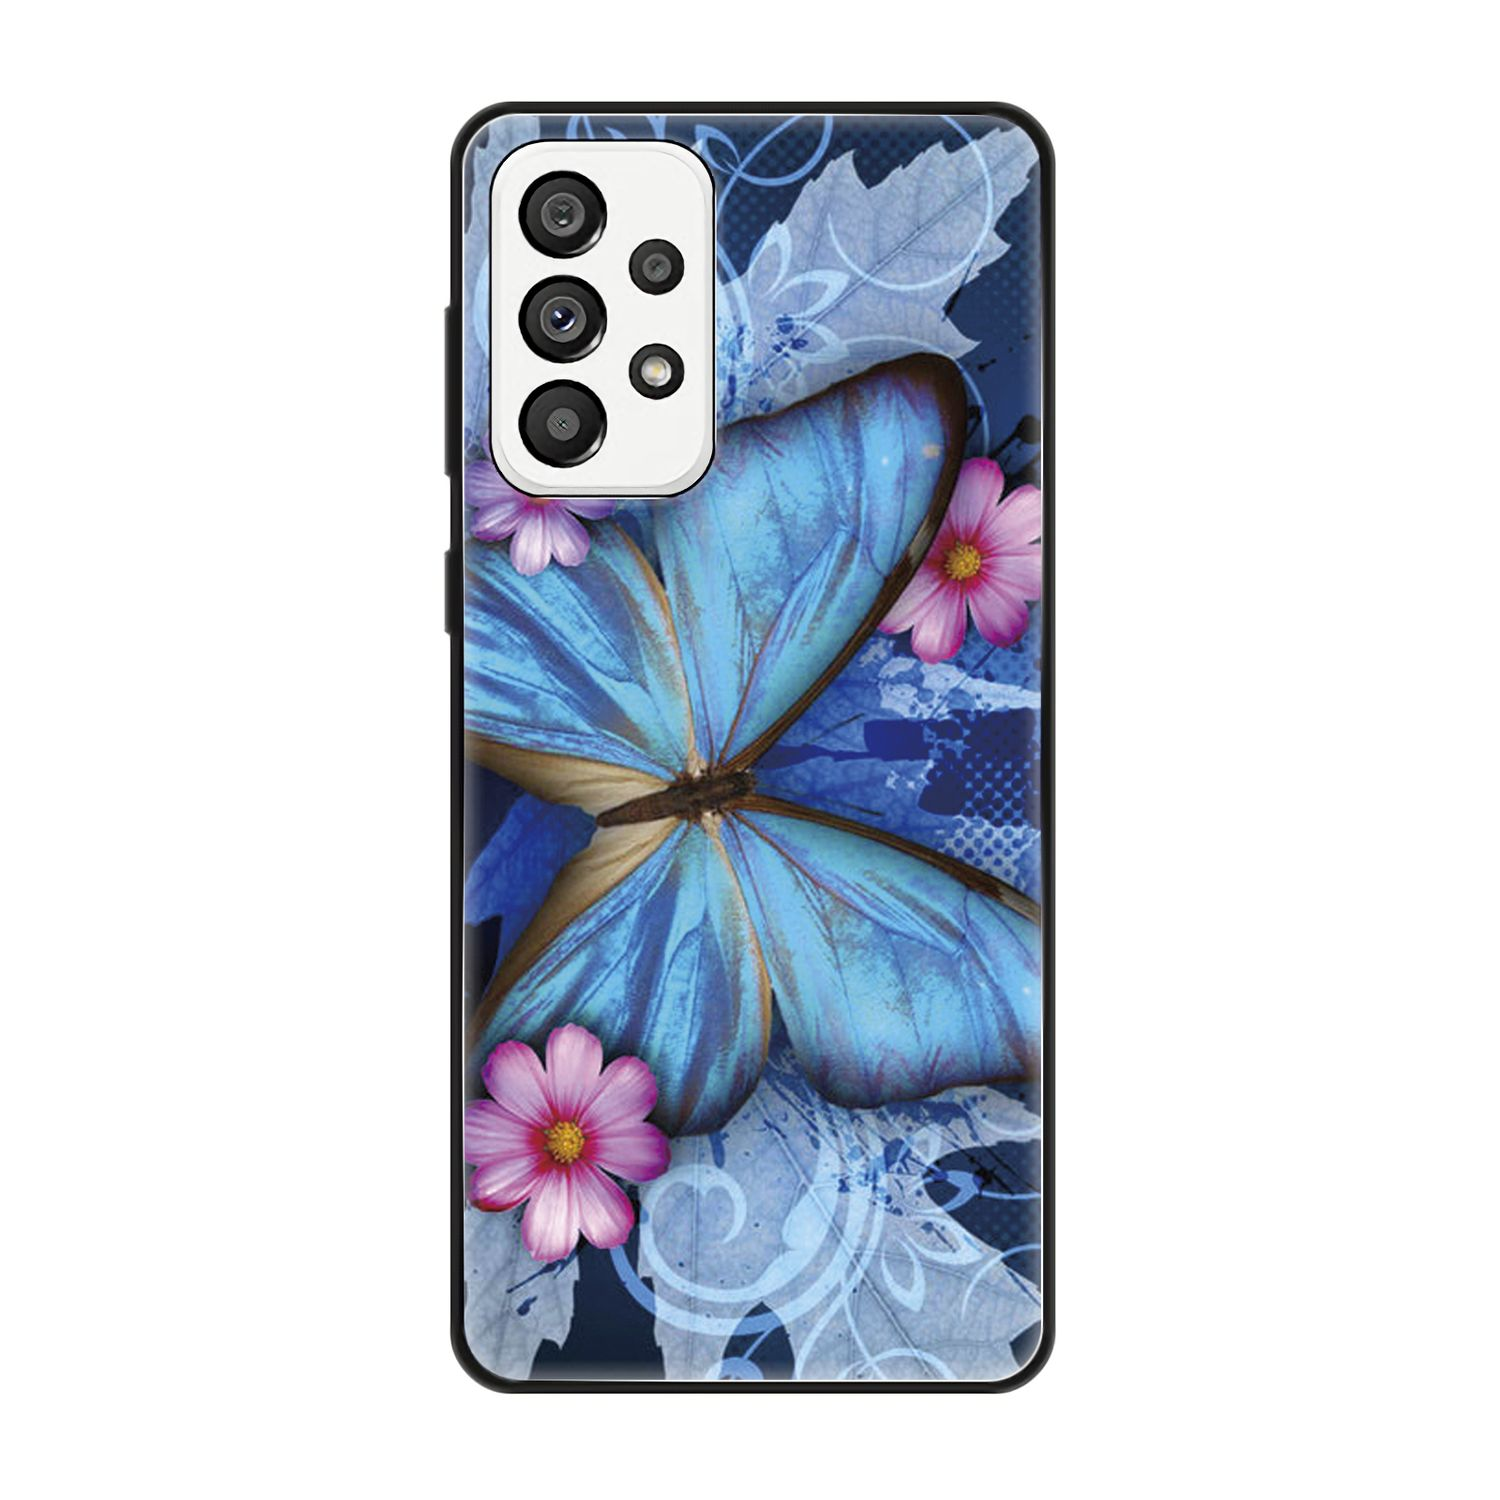 KÖNIG DESIGN Blau 5G, Samsung, Galaxy Backcover, Schmetterling Case, A73